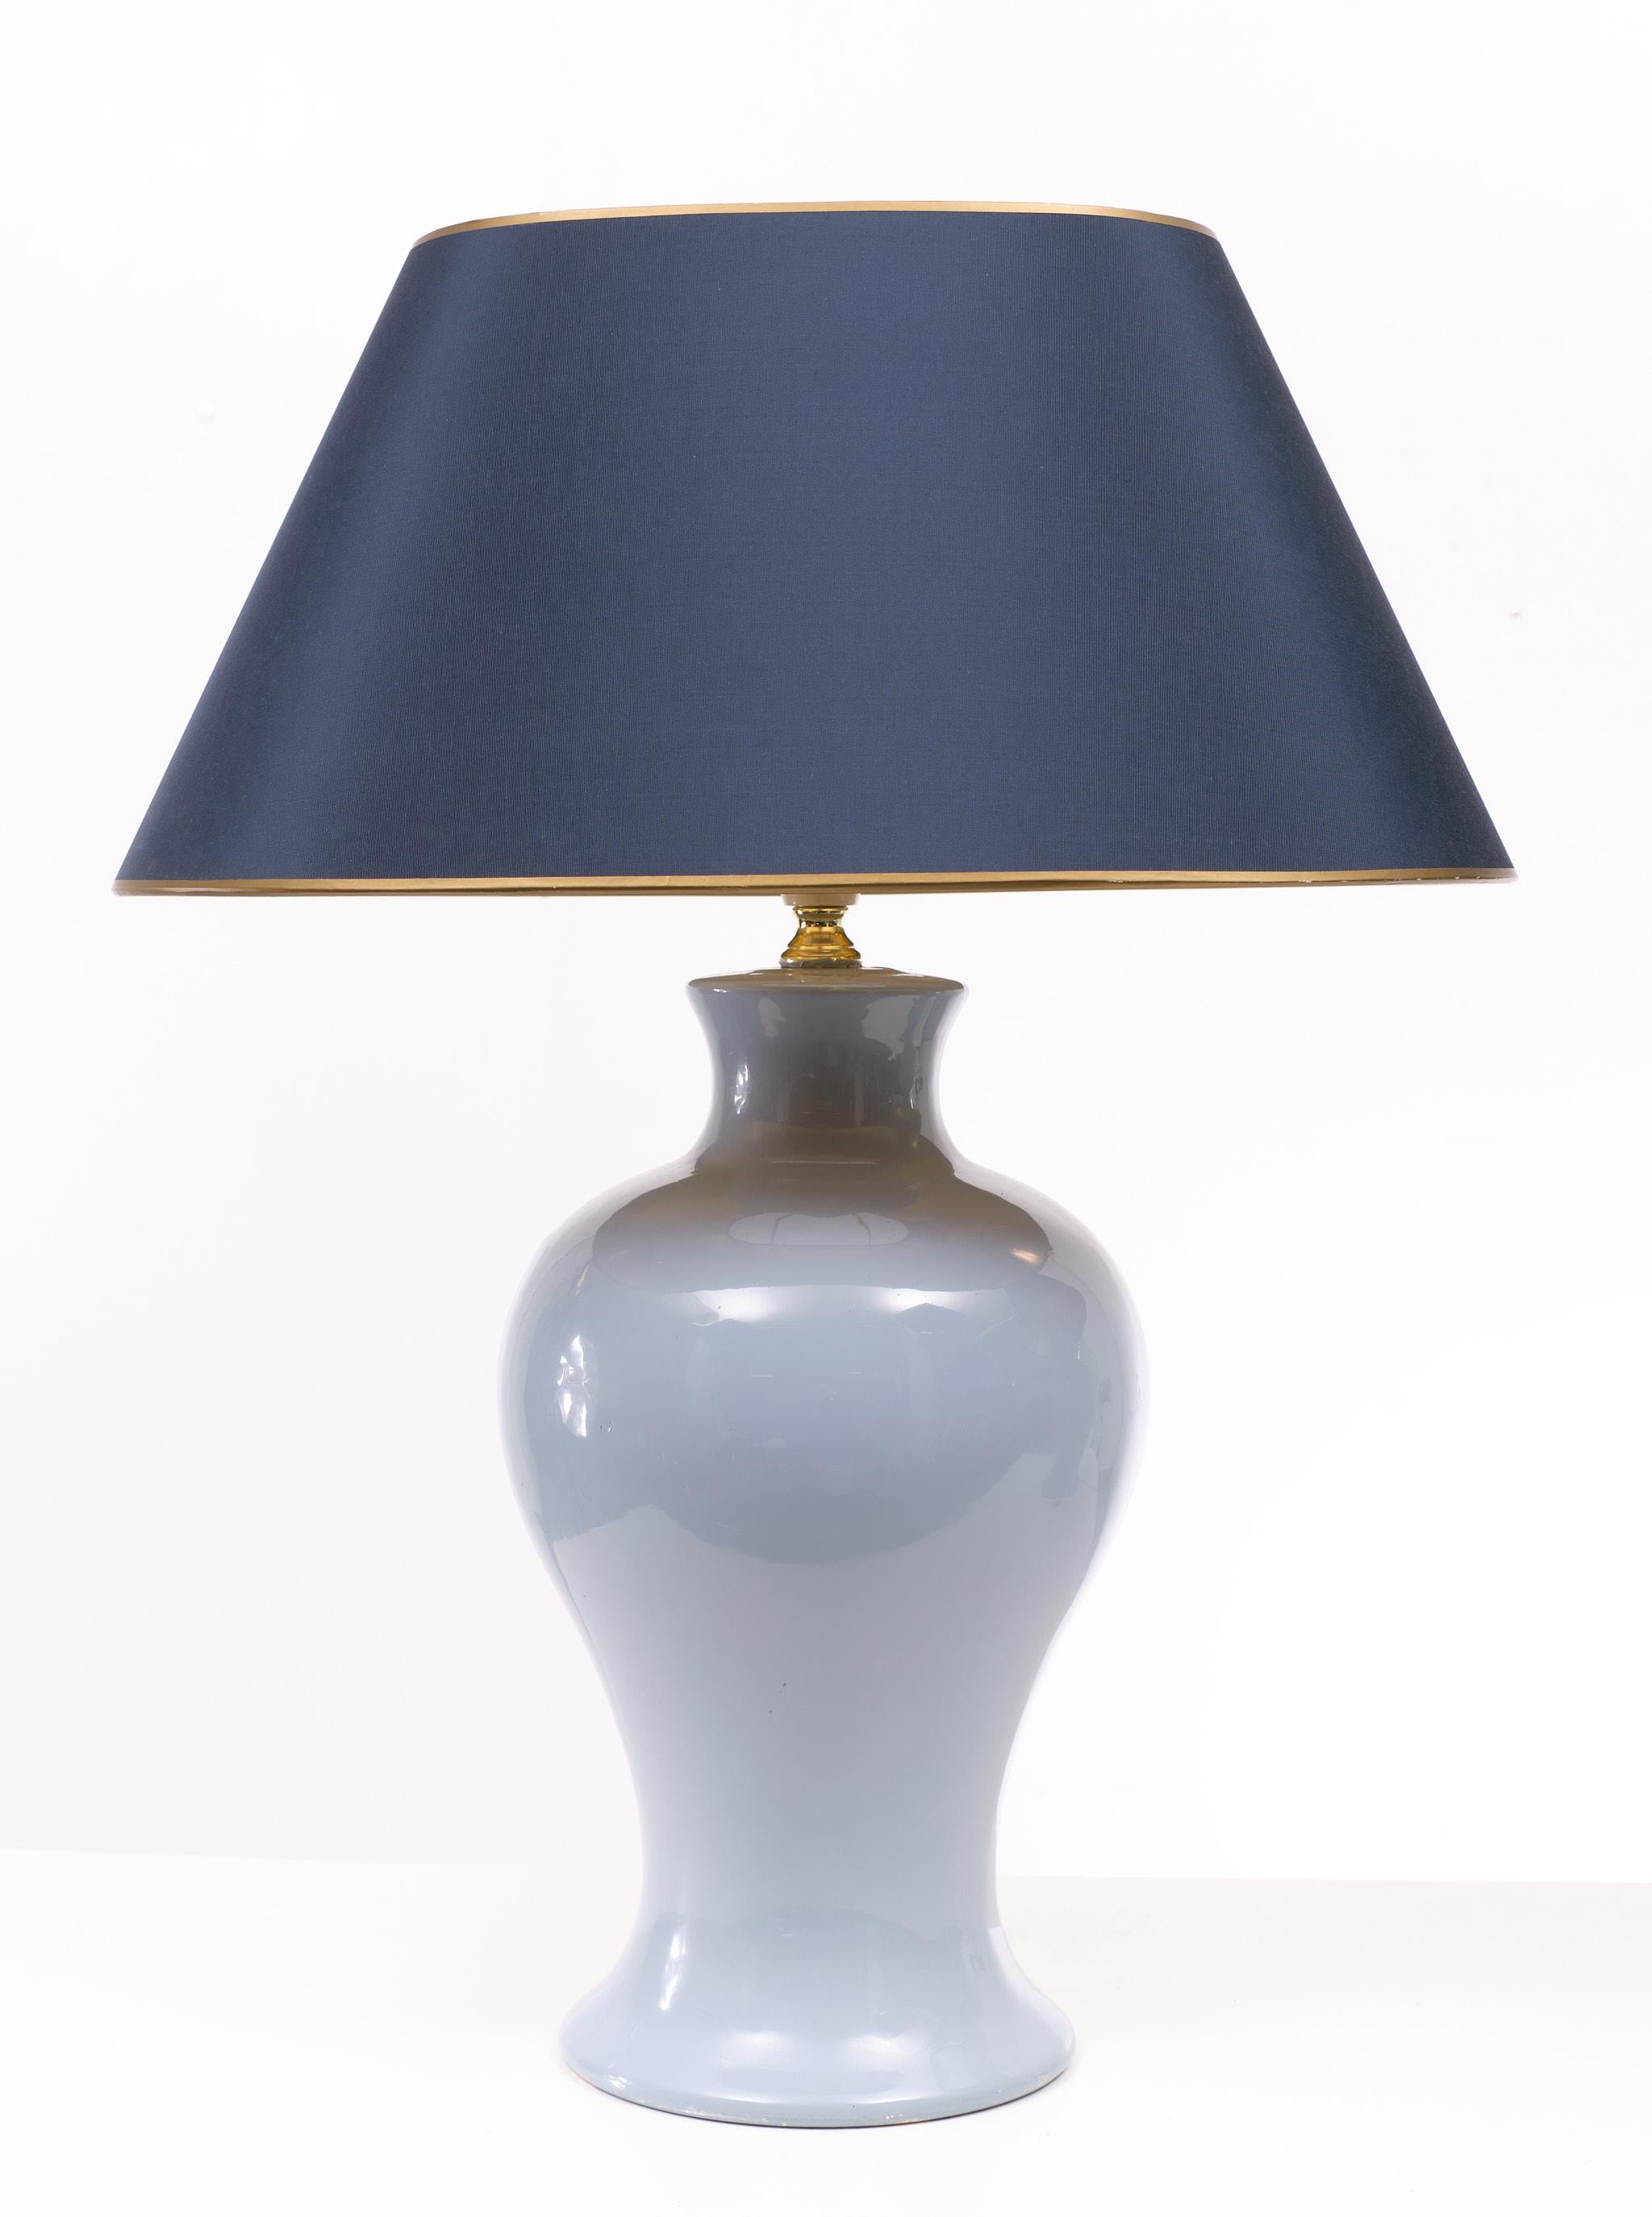 Lampe de table classique traditionnelle, disponible dans une magnifique couleur bleu clair.
Complet avec des abat-jour en soie de forme ovale avec intérieur en or.
Une grande ampoule E27 est nécessaire. France des années 1970.